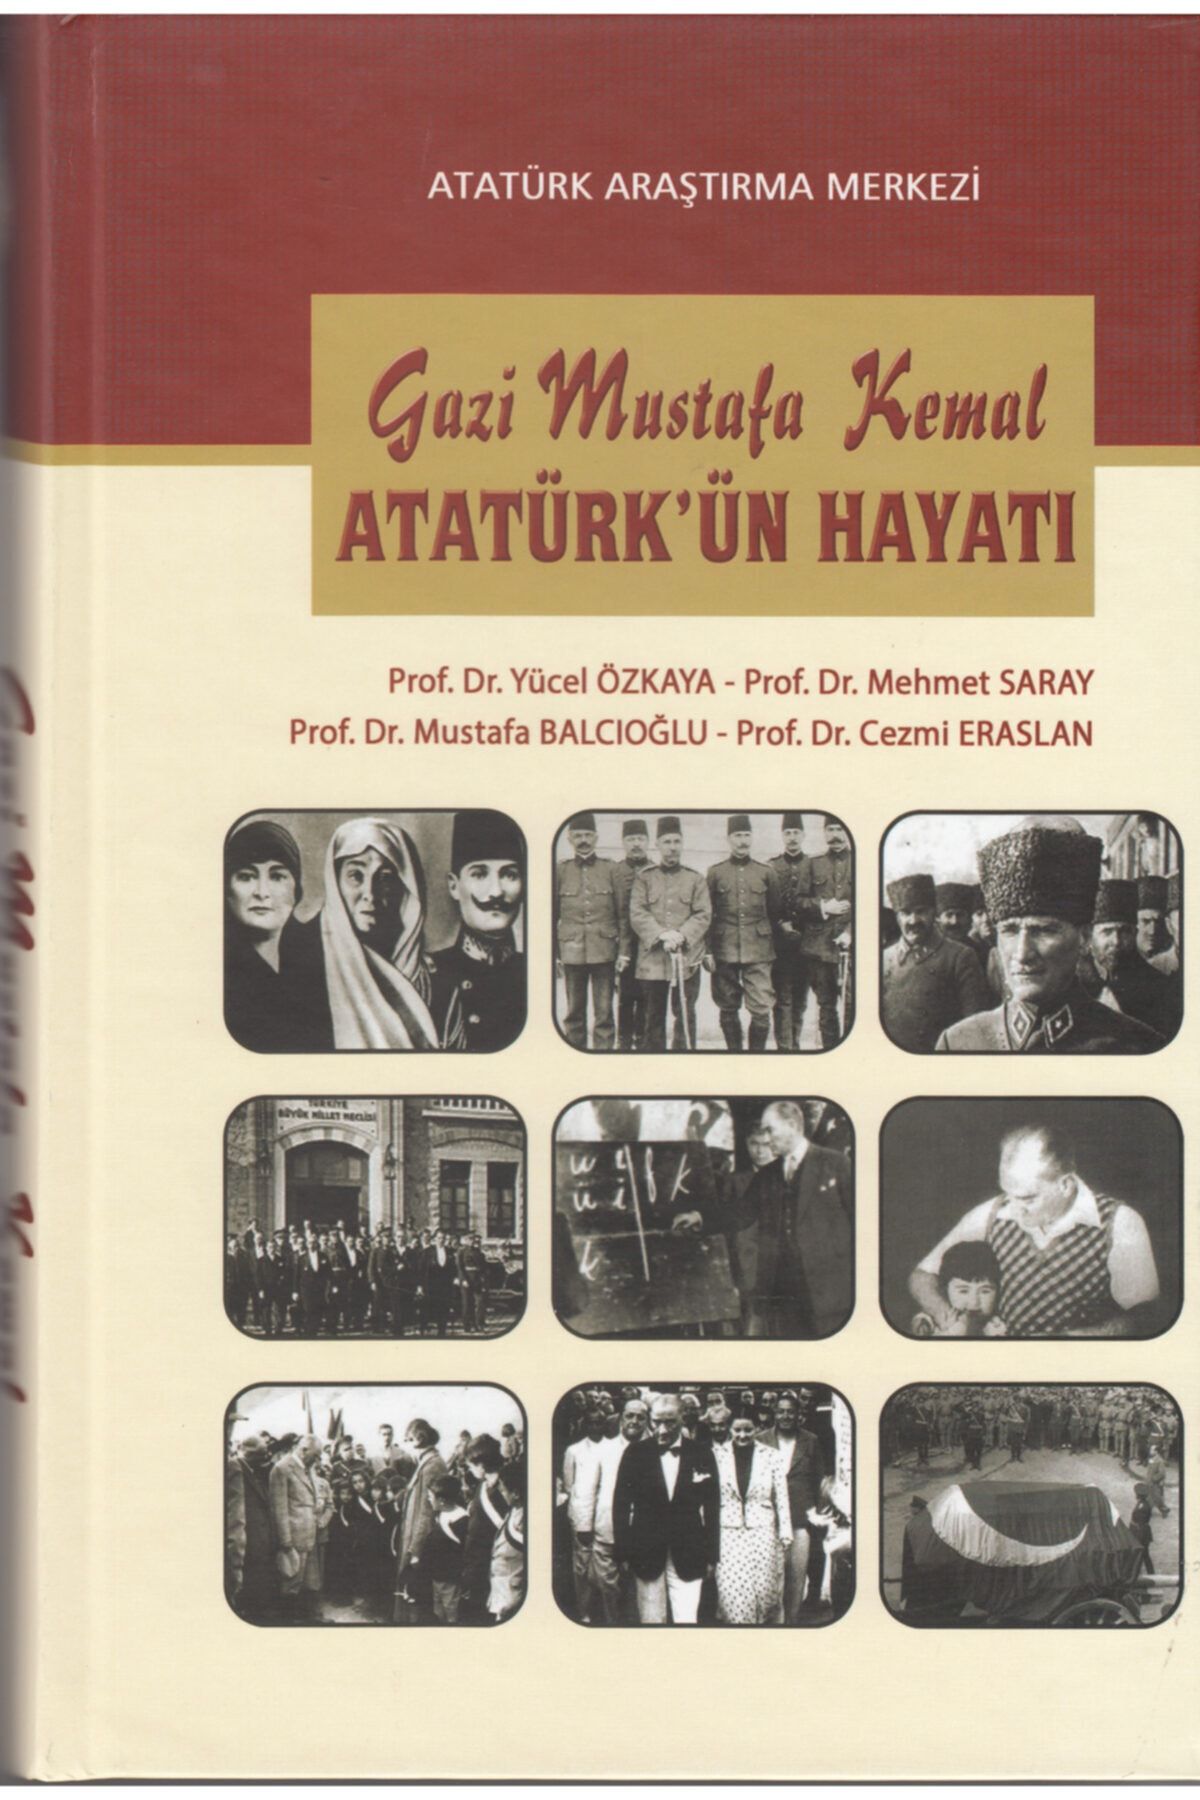 Atatürk Araştırma Merkezi Gazi Mustafa Kemal Atatürk'ün Hayatı - Cezmi Eraslan,mehmet Saray,mustafa Balcıoğlu,yücel Özkaya